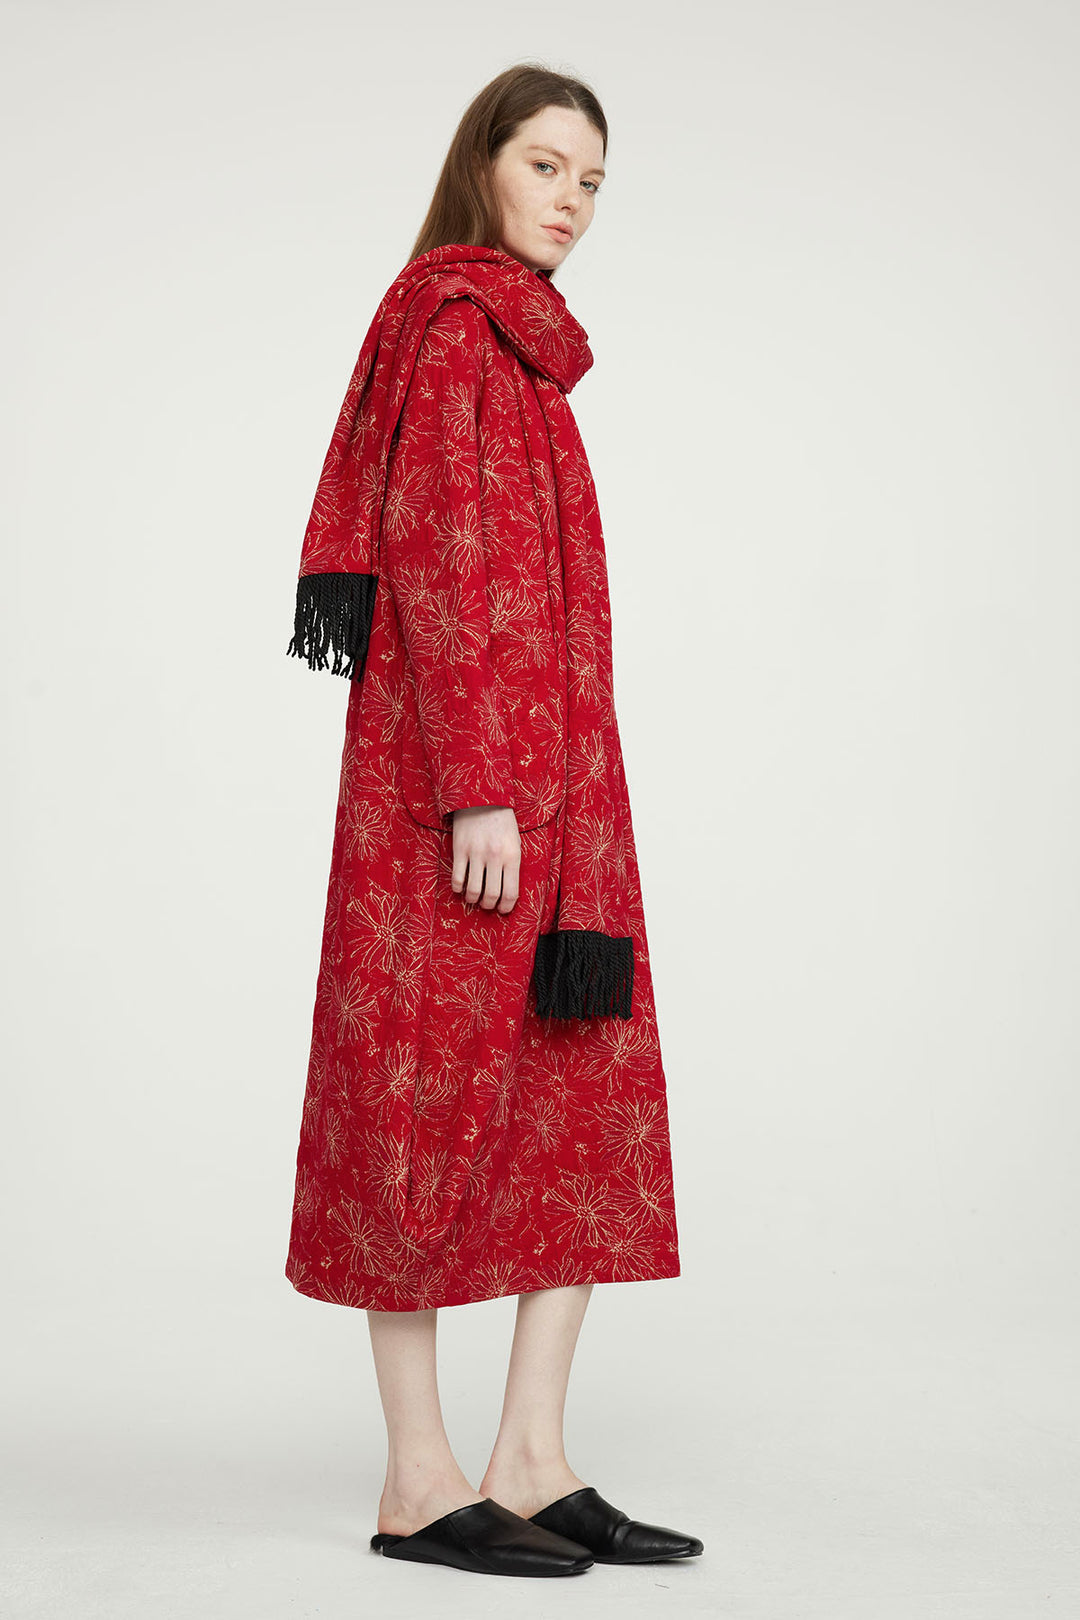 Robe décontractée brodée rouge avec écharpe